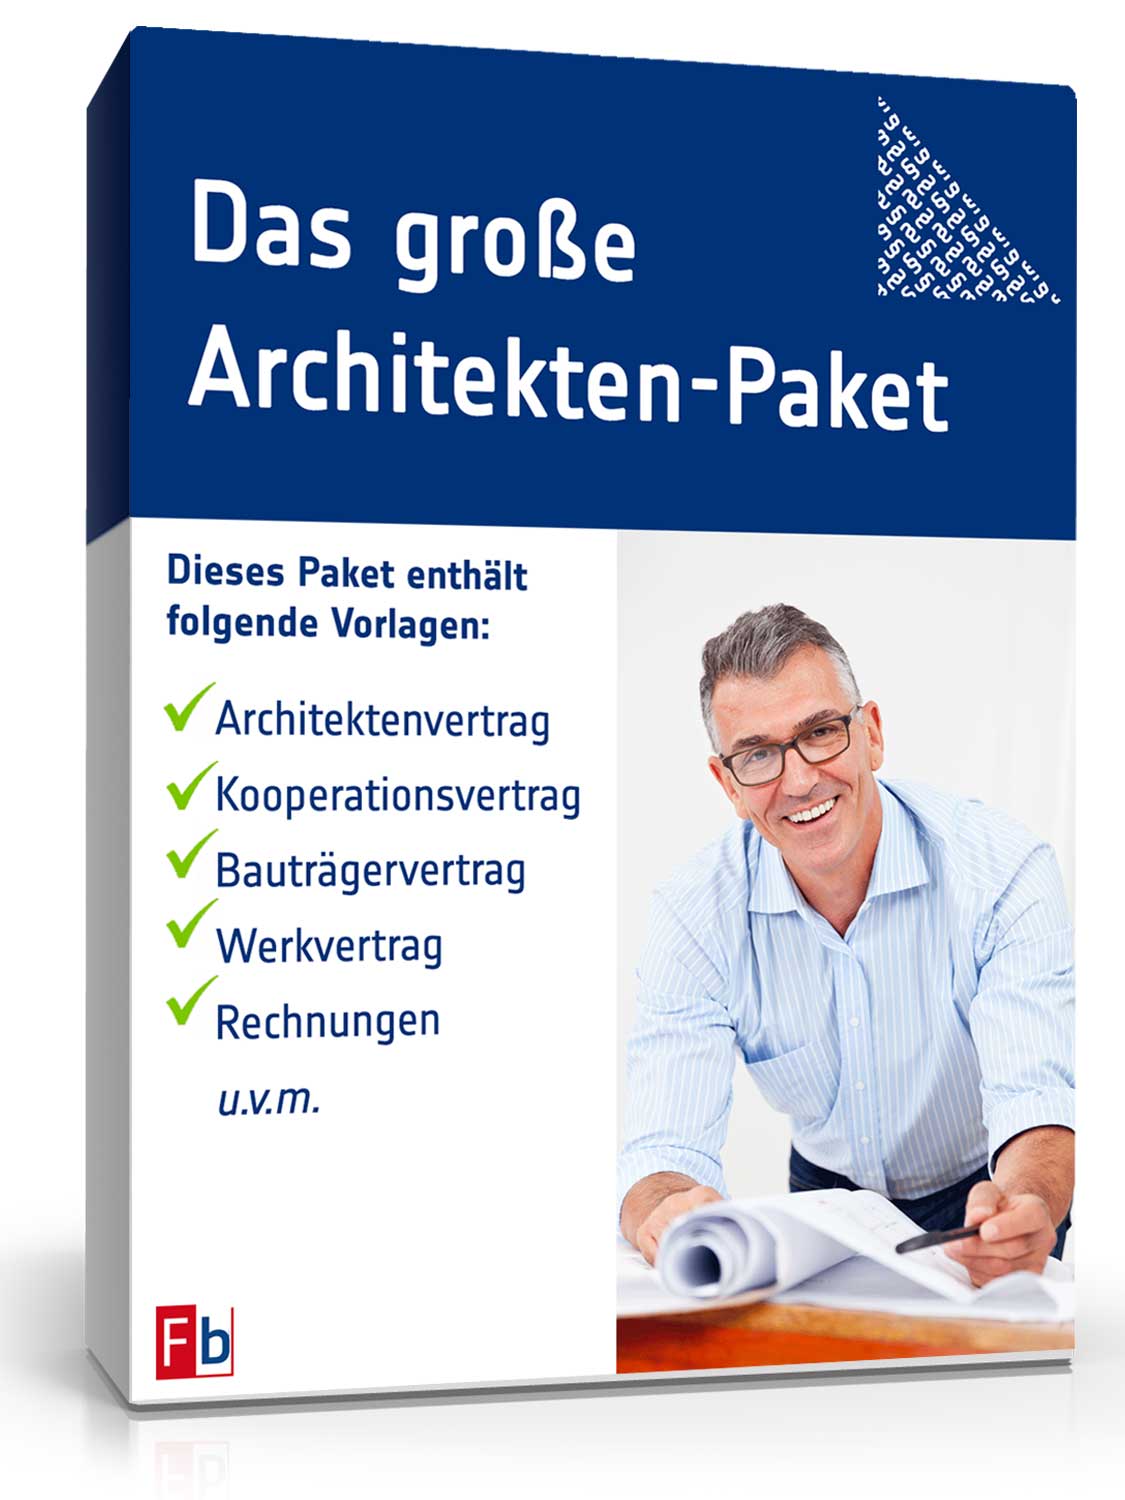 Das grosse Architekten-Paket Dokument zum Download